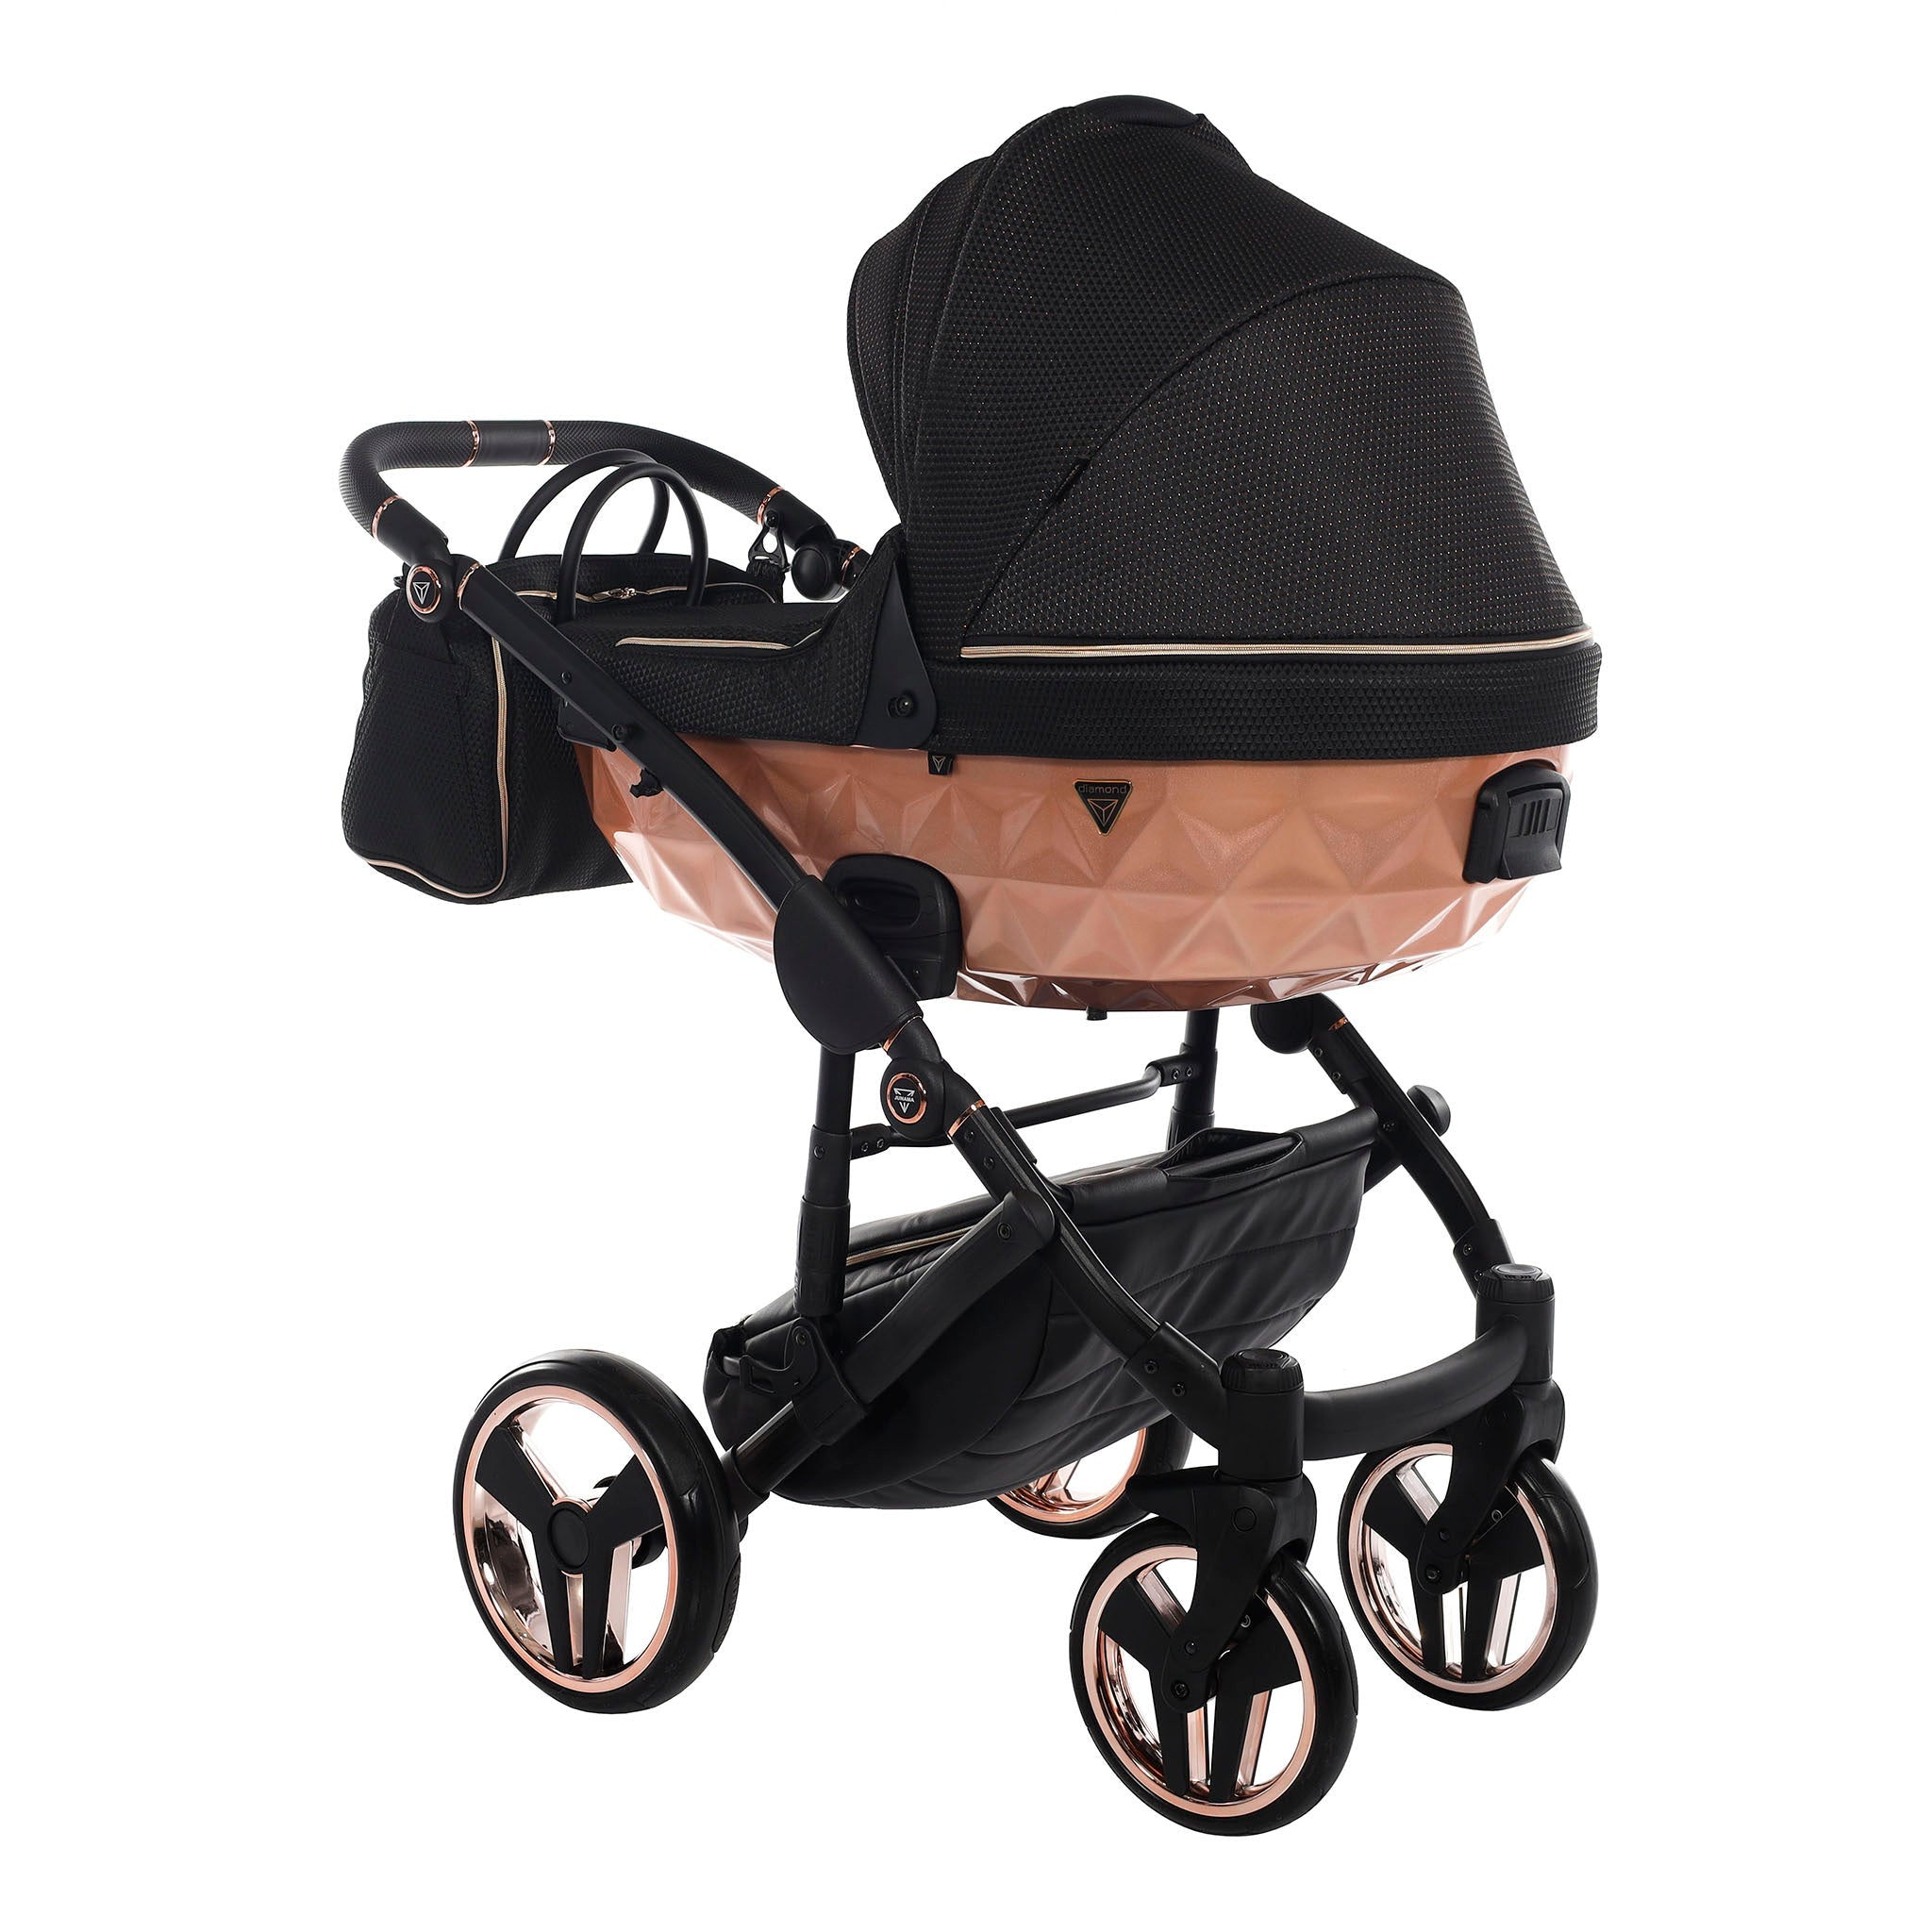 Junama Mirror Satin, baby prams or stroller 2 in 1 - Rosegold and Black, Code number: JUNMSAT02